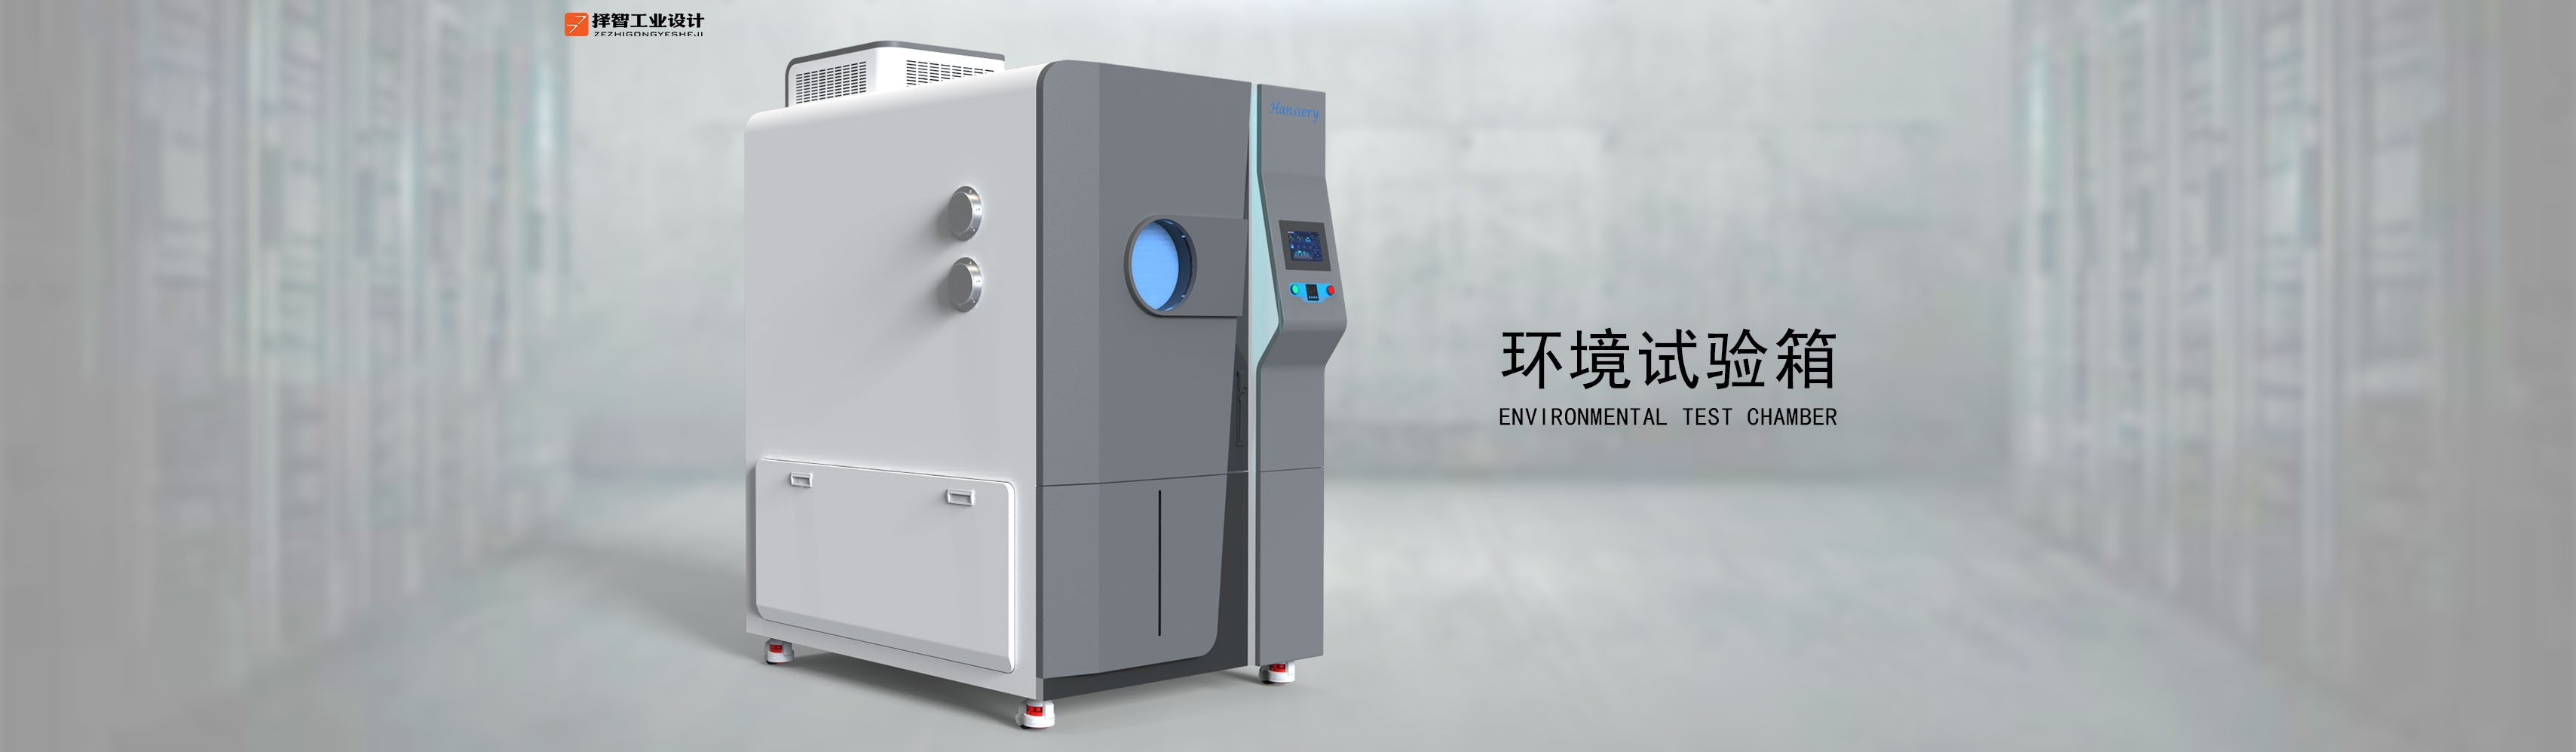 上海苏州产品设计工业产品外观设计结构设计环境试验箱